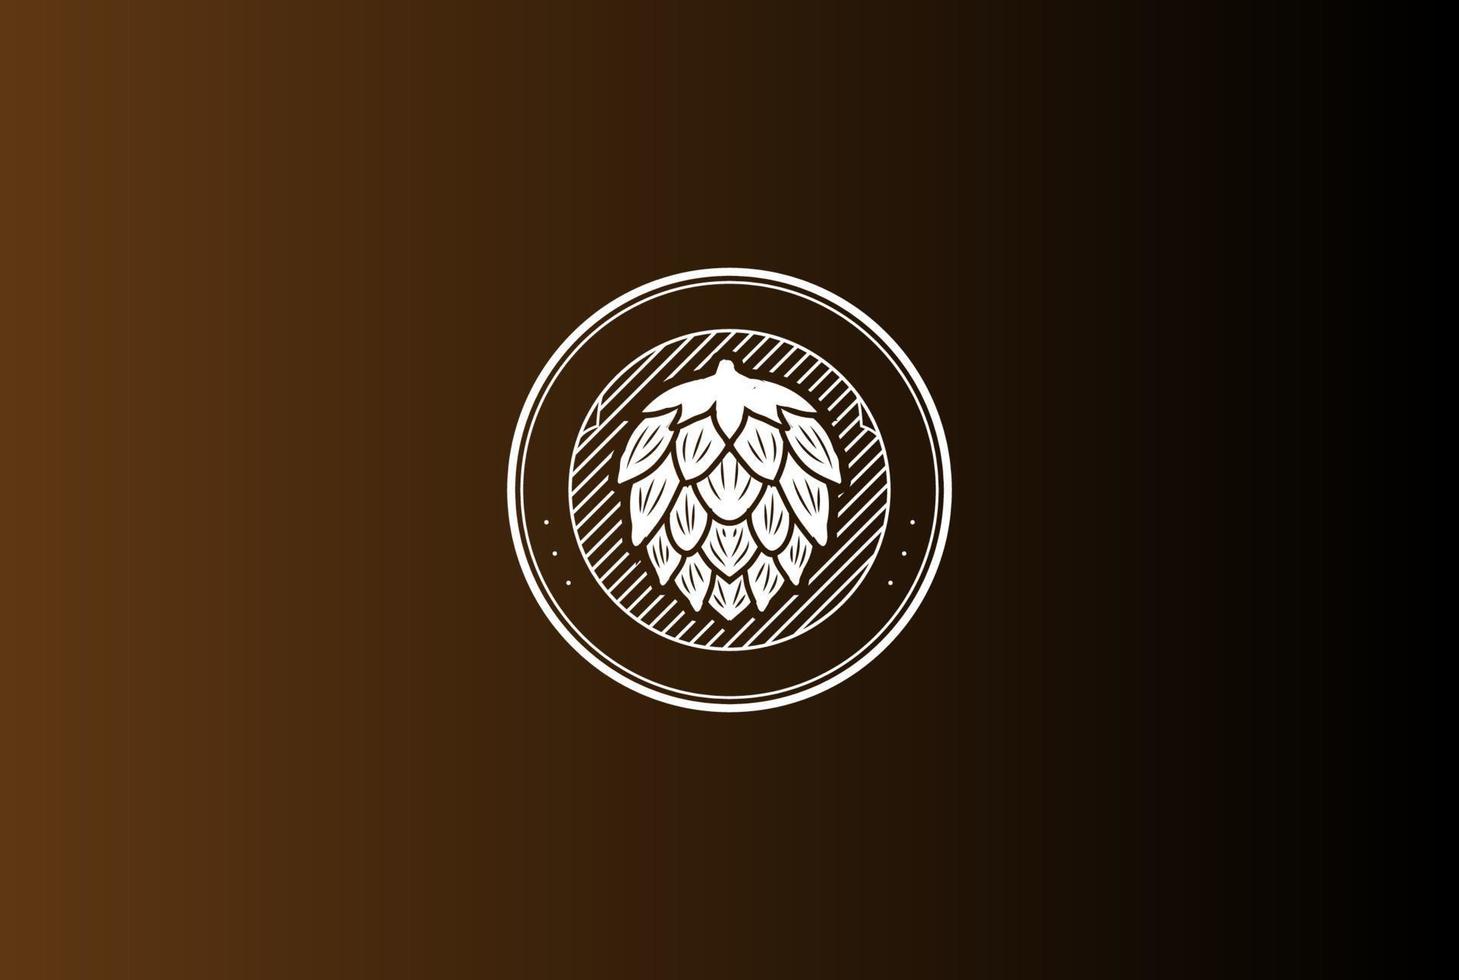 vetor de design de logotipo de rótulo de cervejaria de cerveja vintage retro hop fabricação de cerveja